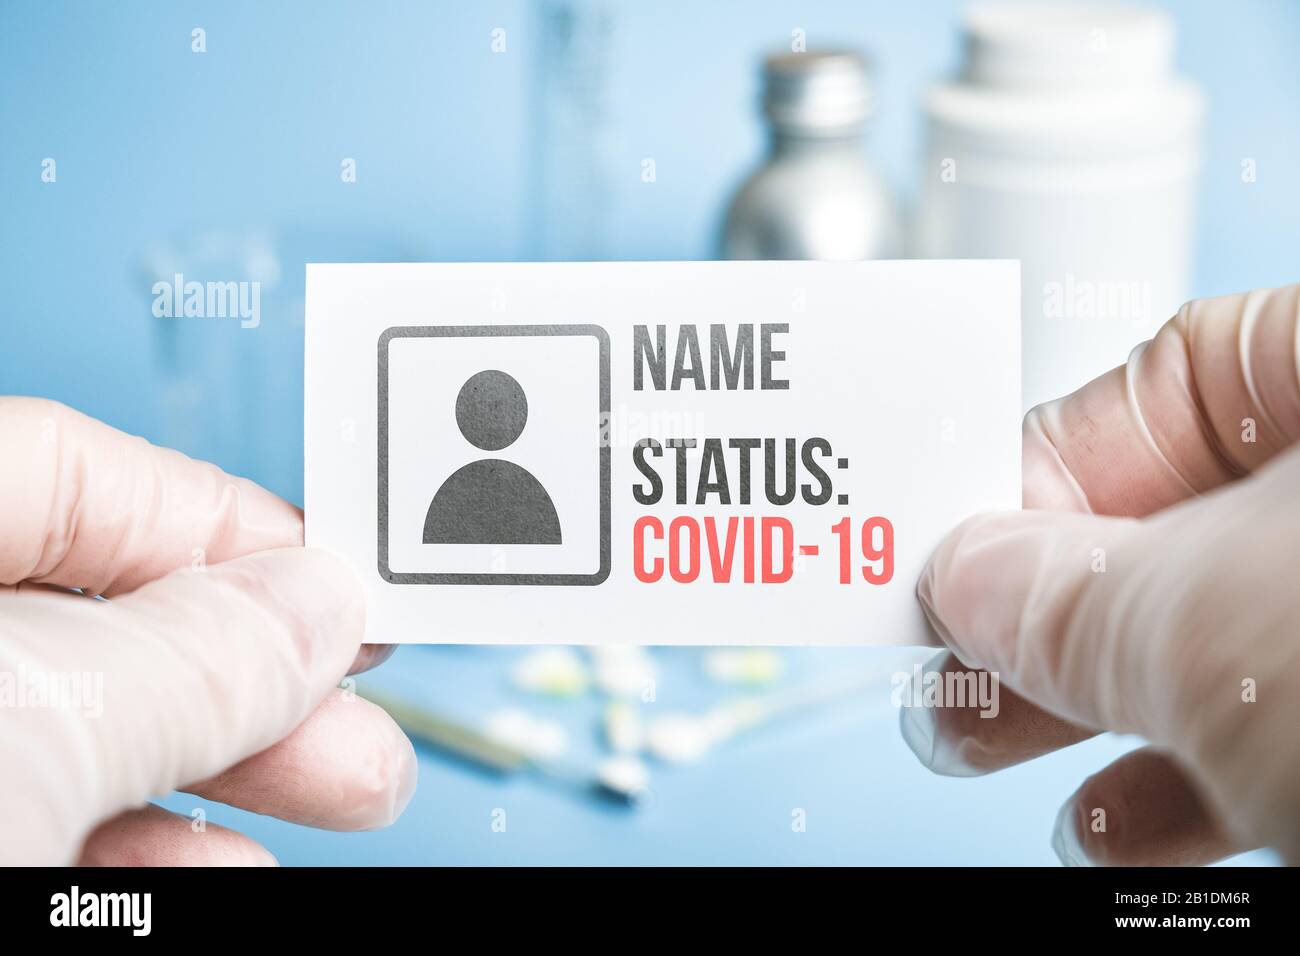 Un médecin en gants possède une carte blanche avec les données personnelles d'une personne et son statut de membre infecté COVID-19 dans un contexte médical Banque D'Images